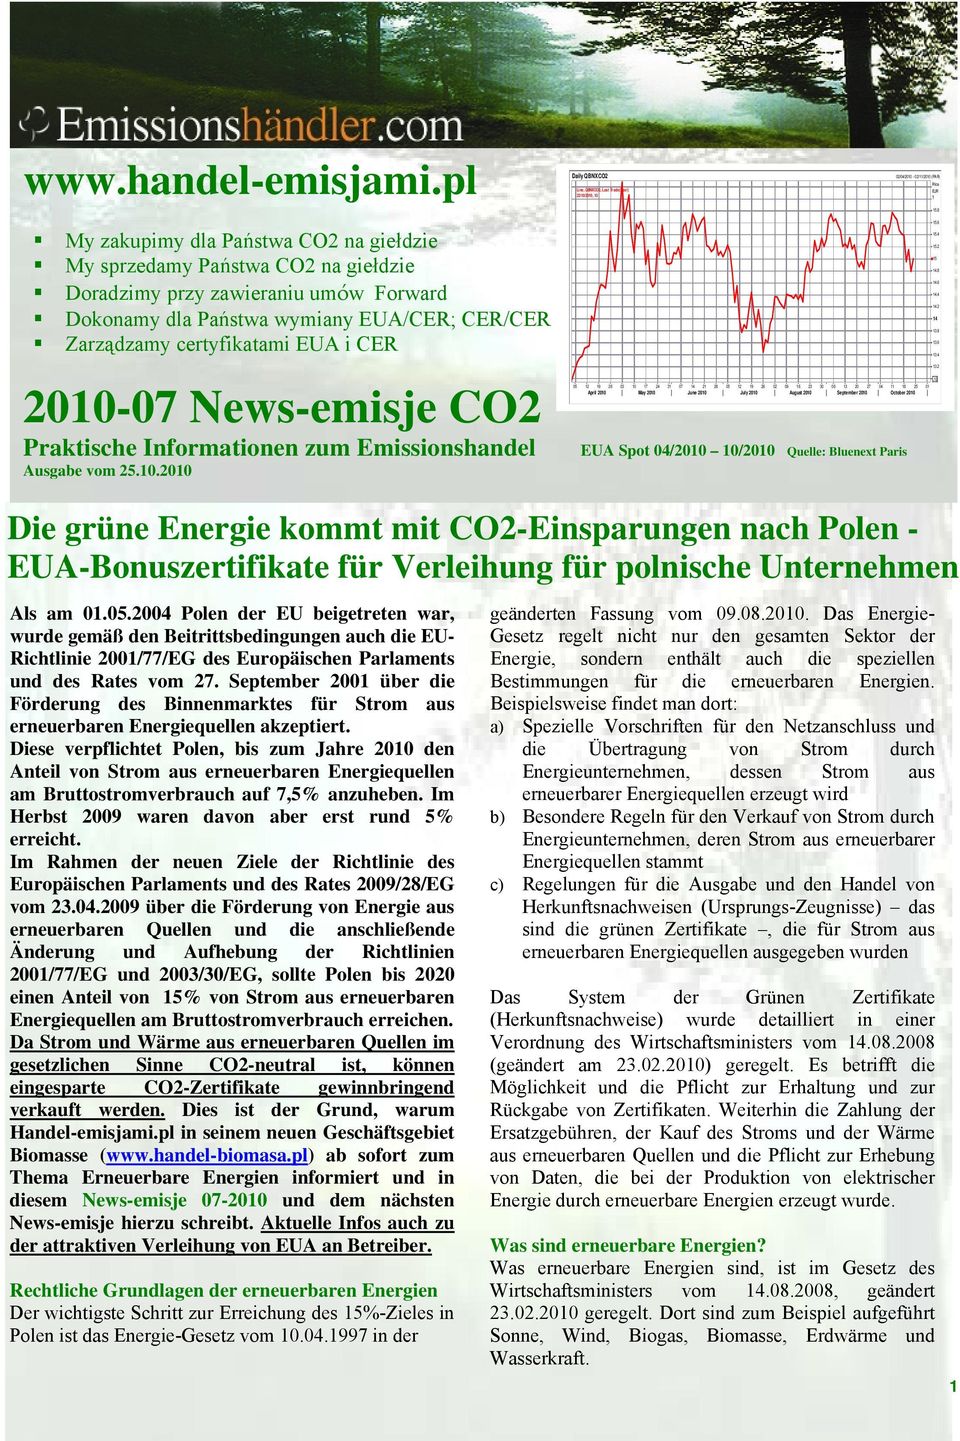 2010-07 News-emisje CO2 Praktische Informationen zum Emissionshandel Ausgabe vom 25.10.2010 15.6 15.4 15.2 15 14.8 14.6 14.4 14.2 14 13.8 13.6 13.4 13.2.12 05 12 19 26 03 10 17 24 31 07 14 21 28 05